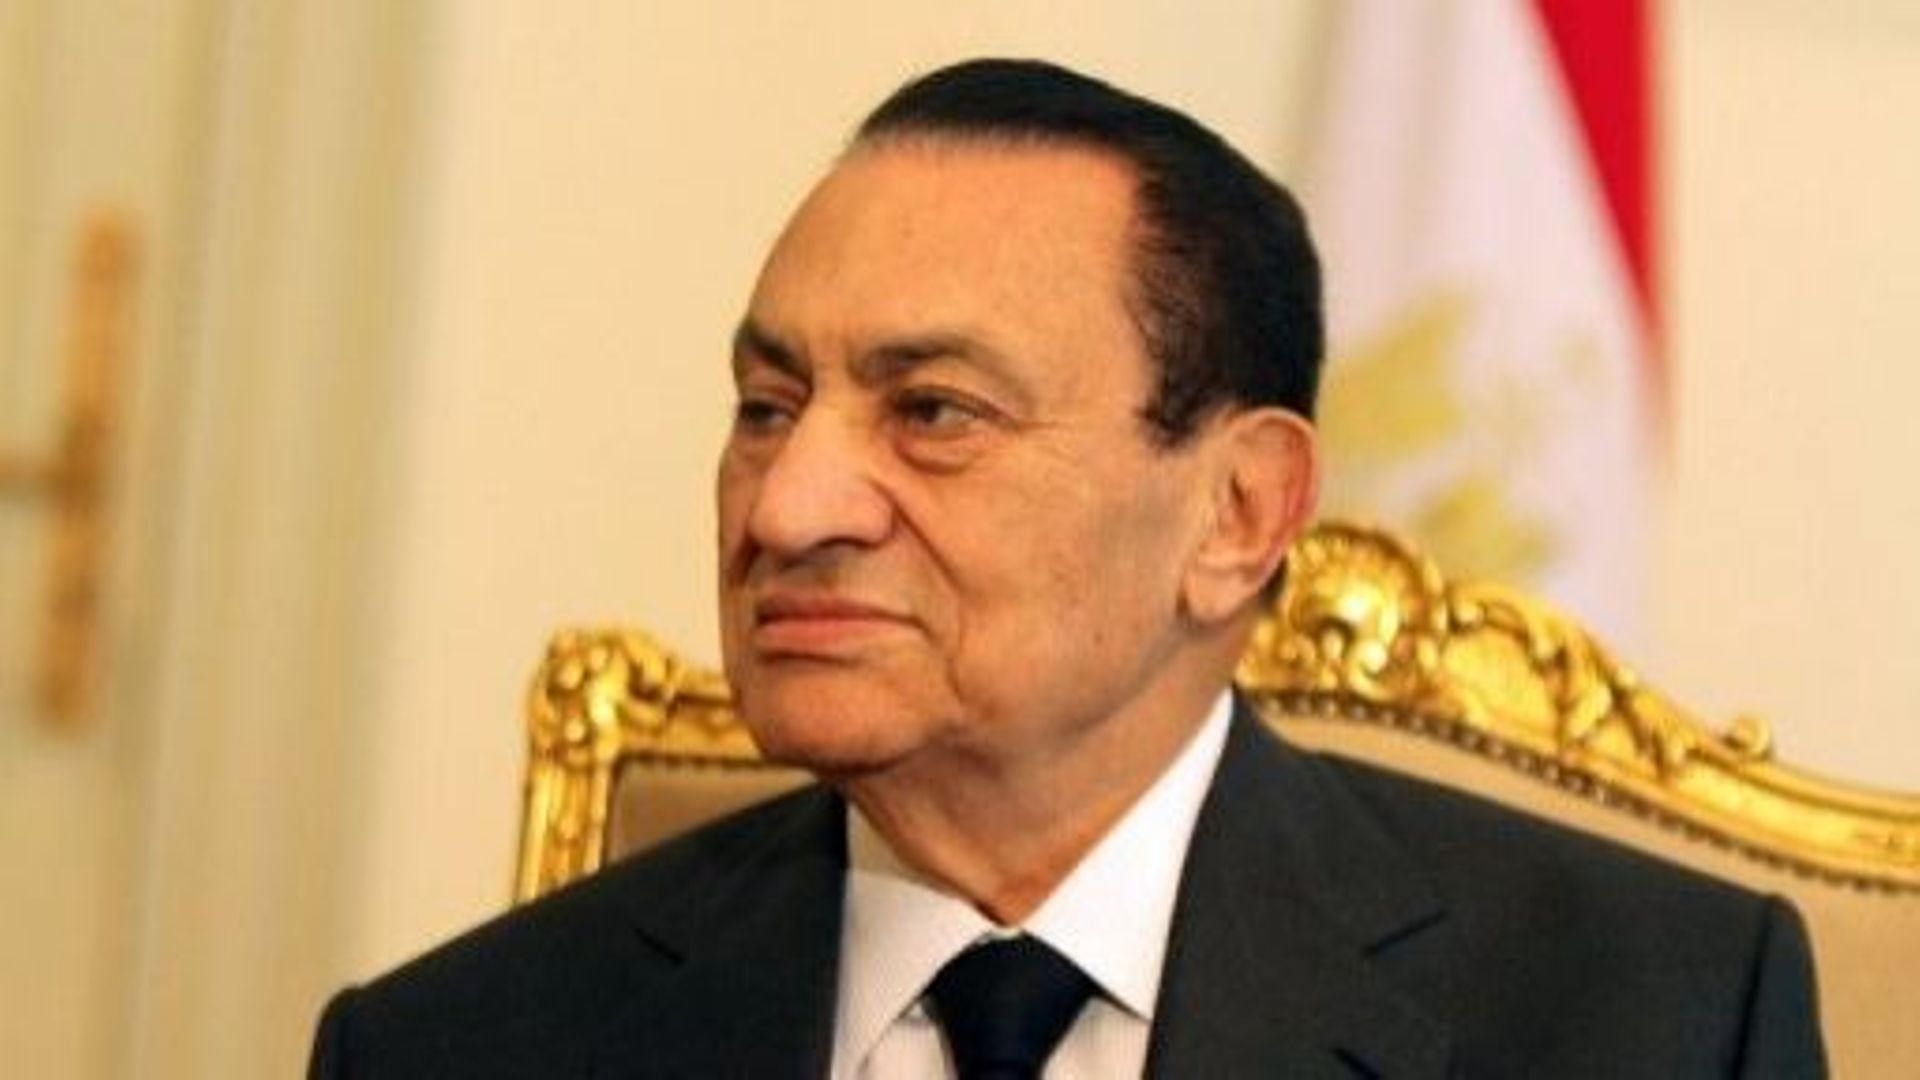 Photo datée du 8 février 2011 de Hosni Moubarak au Caire